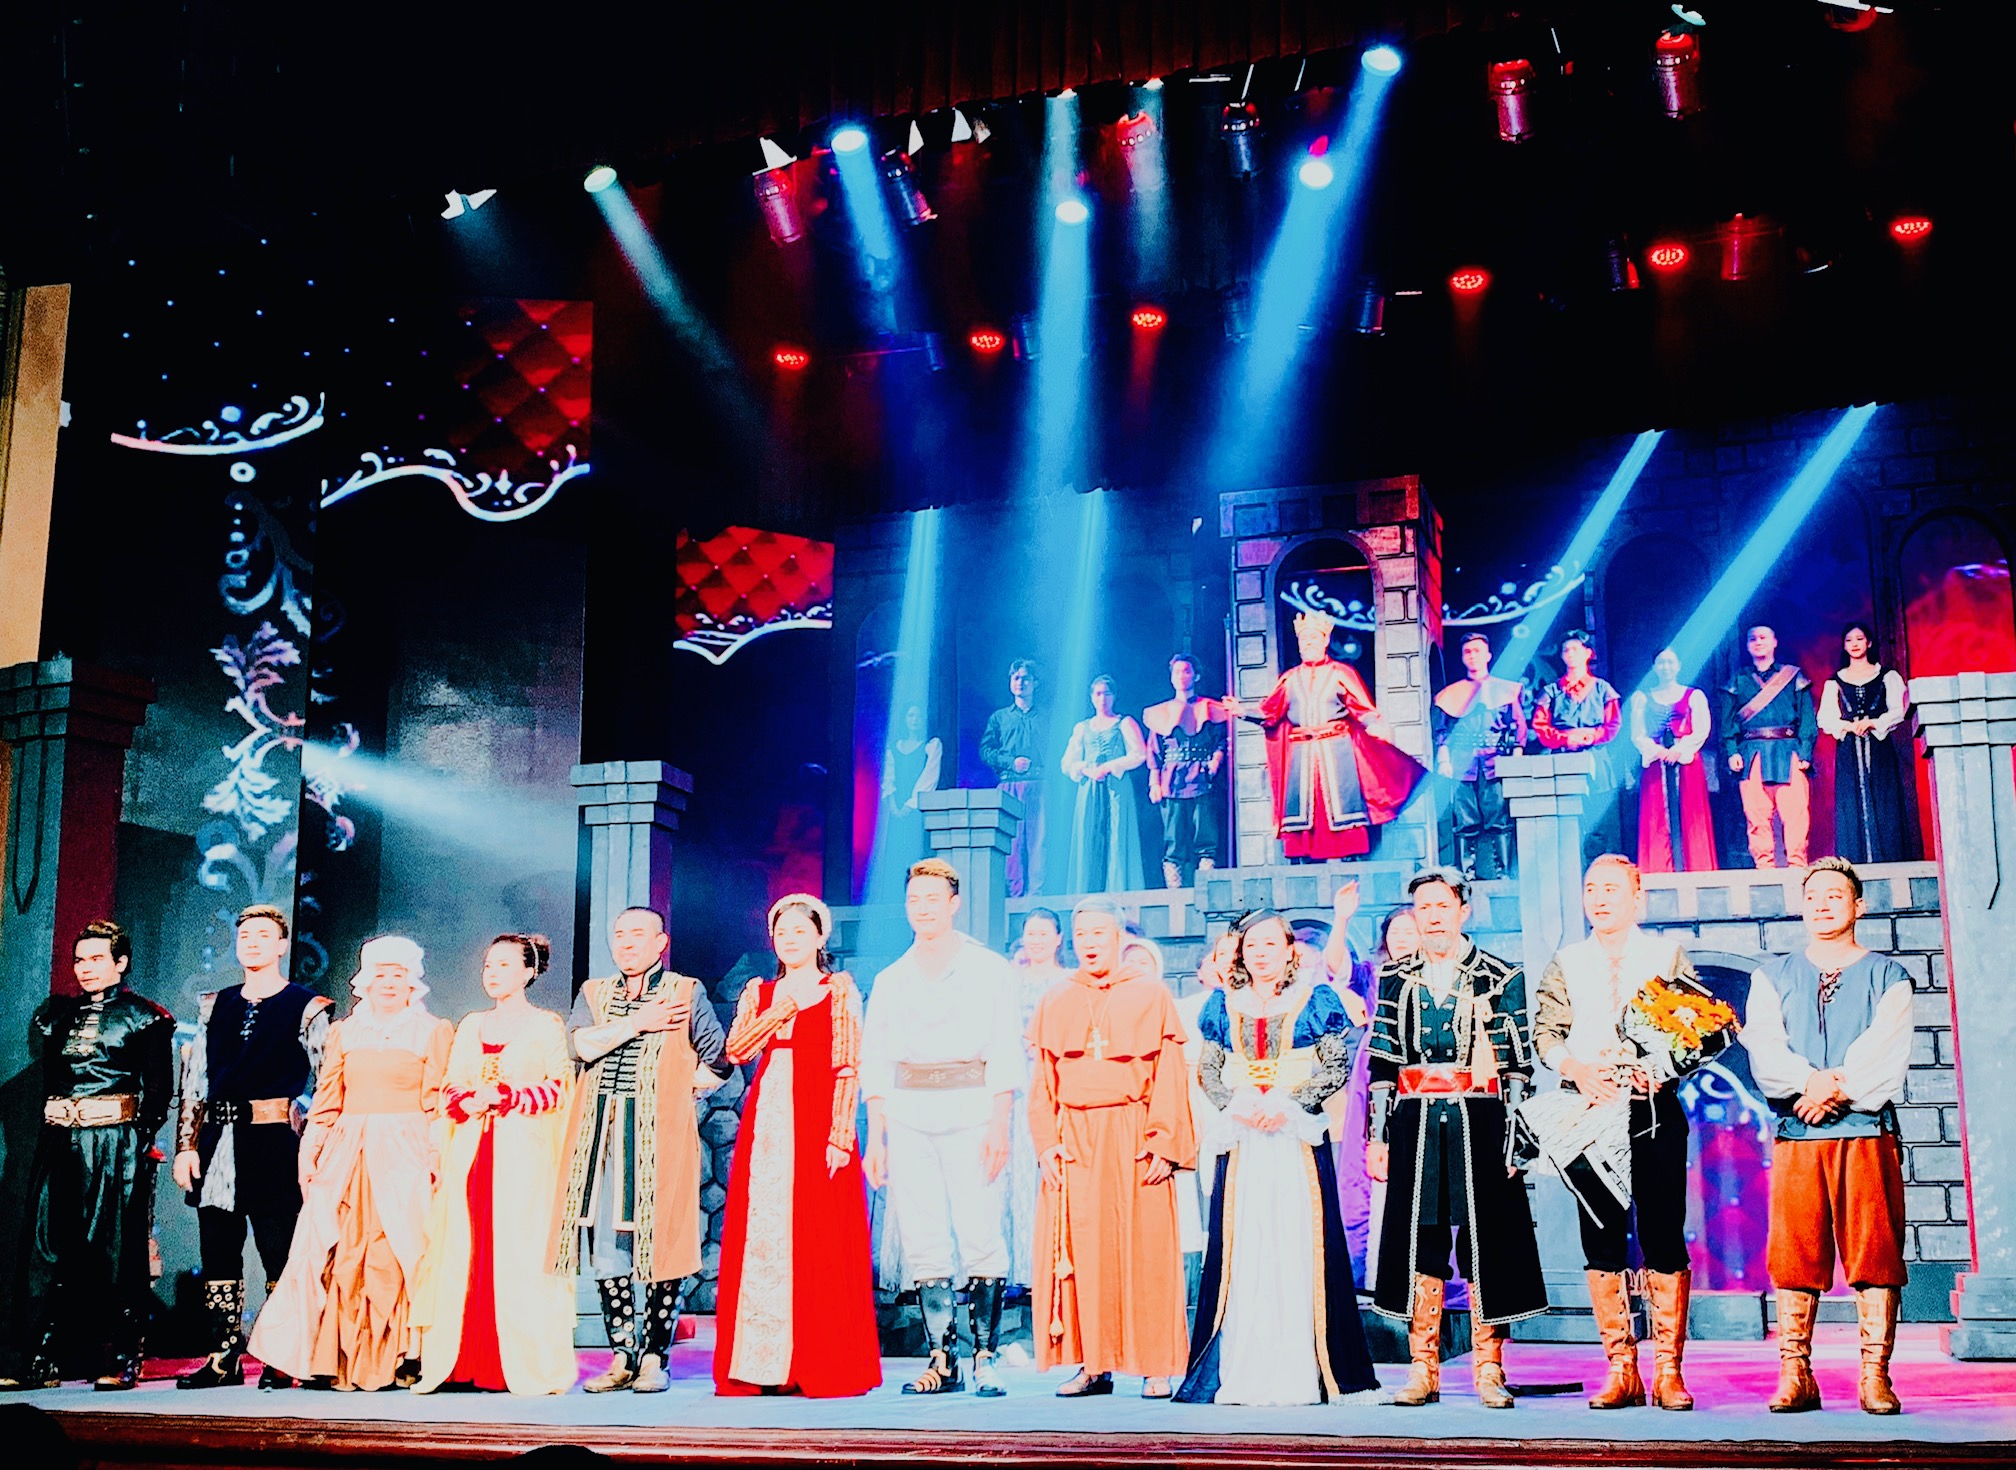 Các nghệ sĩ, diễn viên Đoàn Kịch nói Hải Phòng biểu diễn vở Romeo và Juliet tại Nhà hát thành phố Hải Phòng.